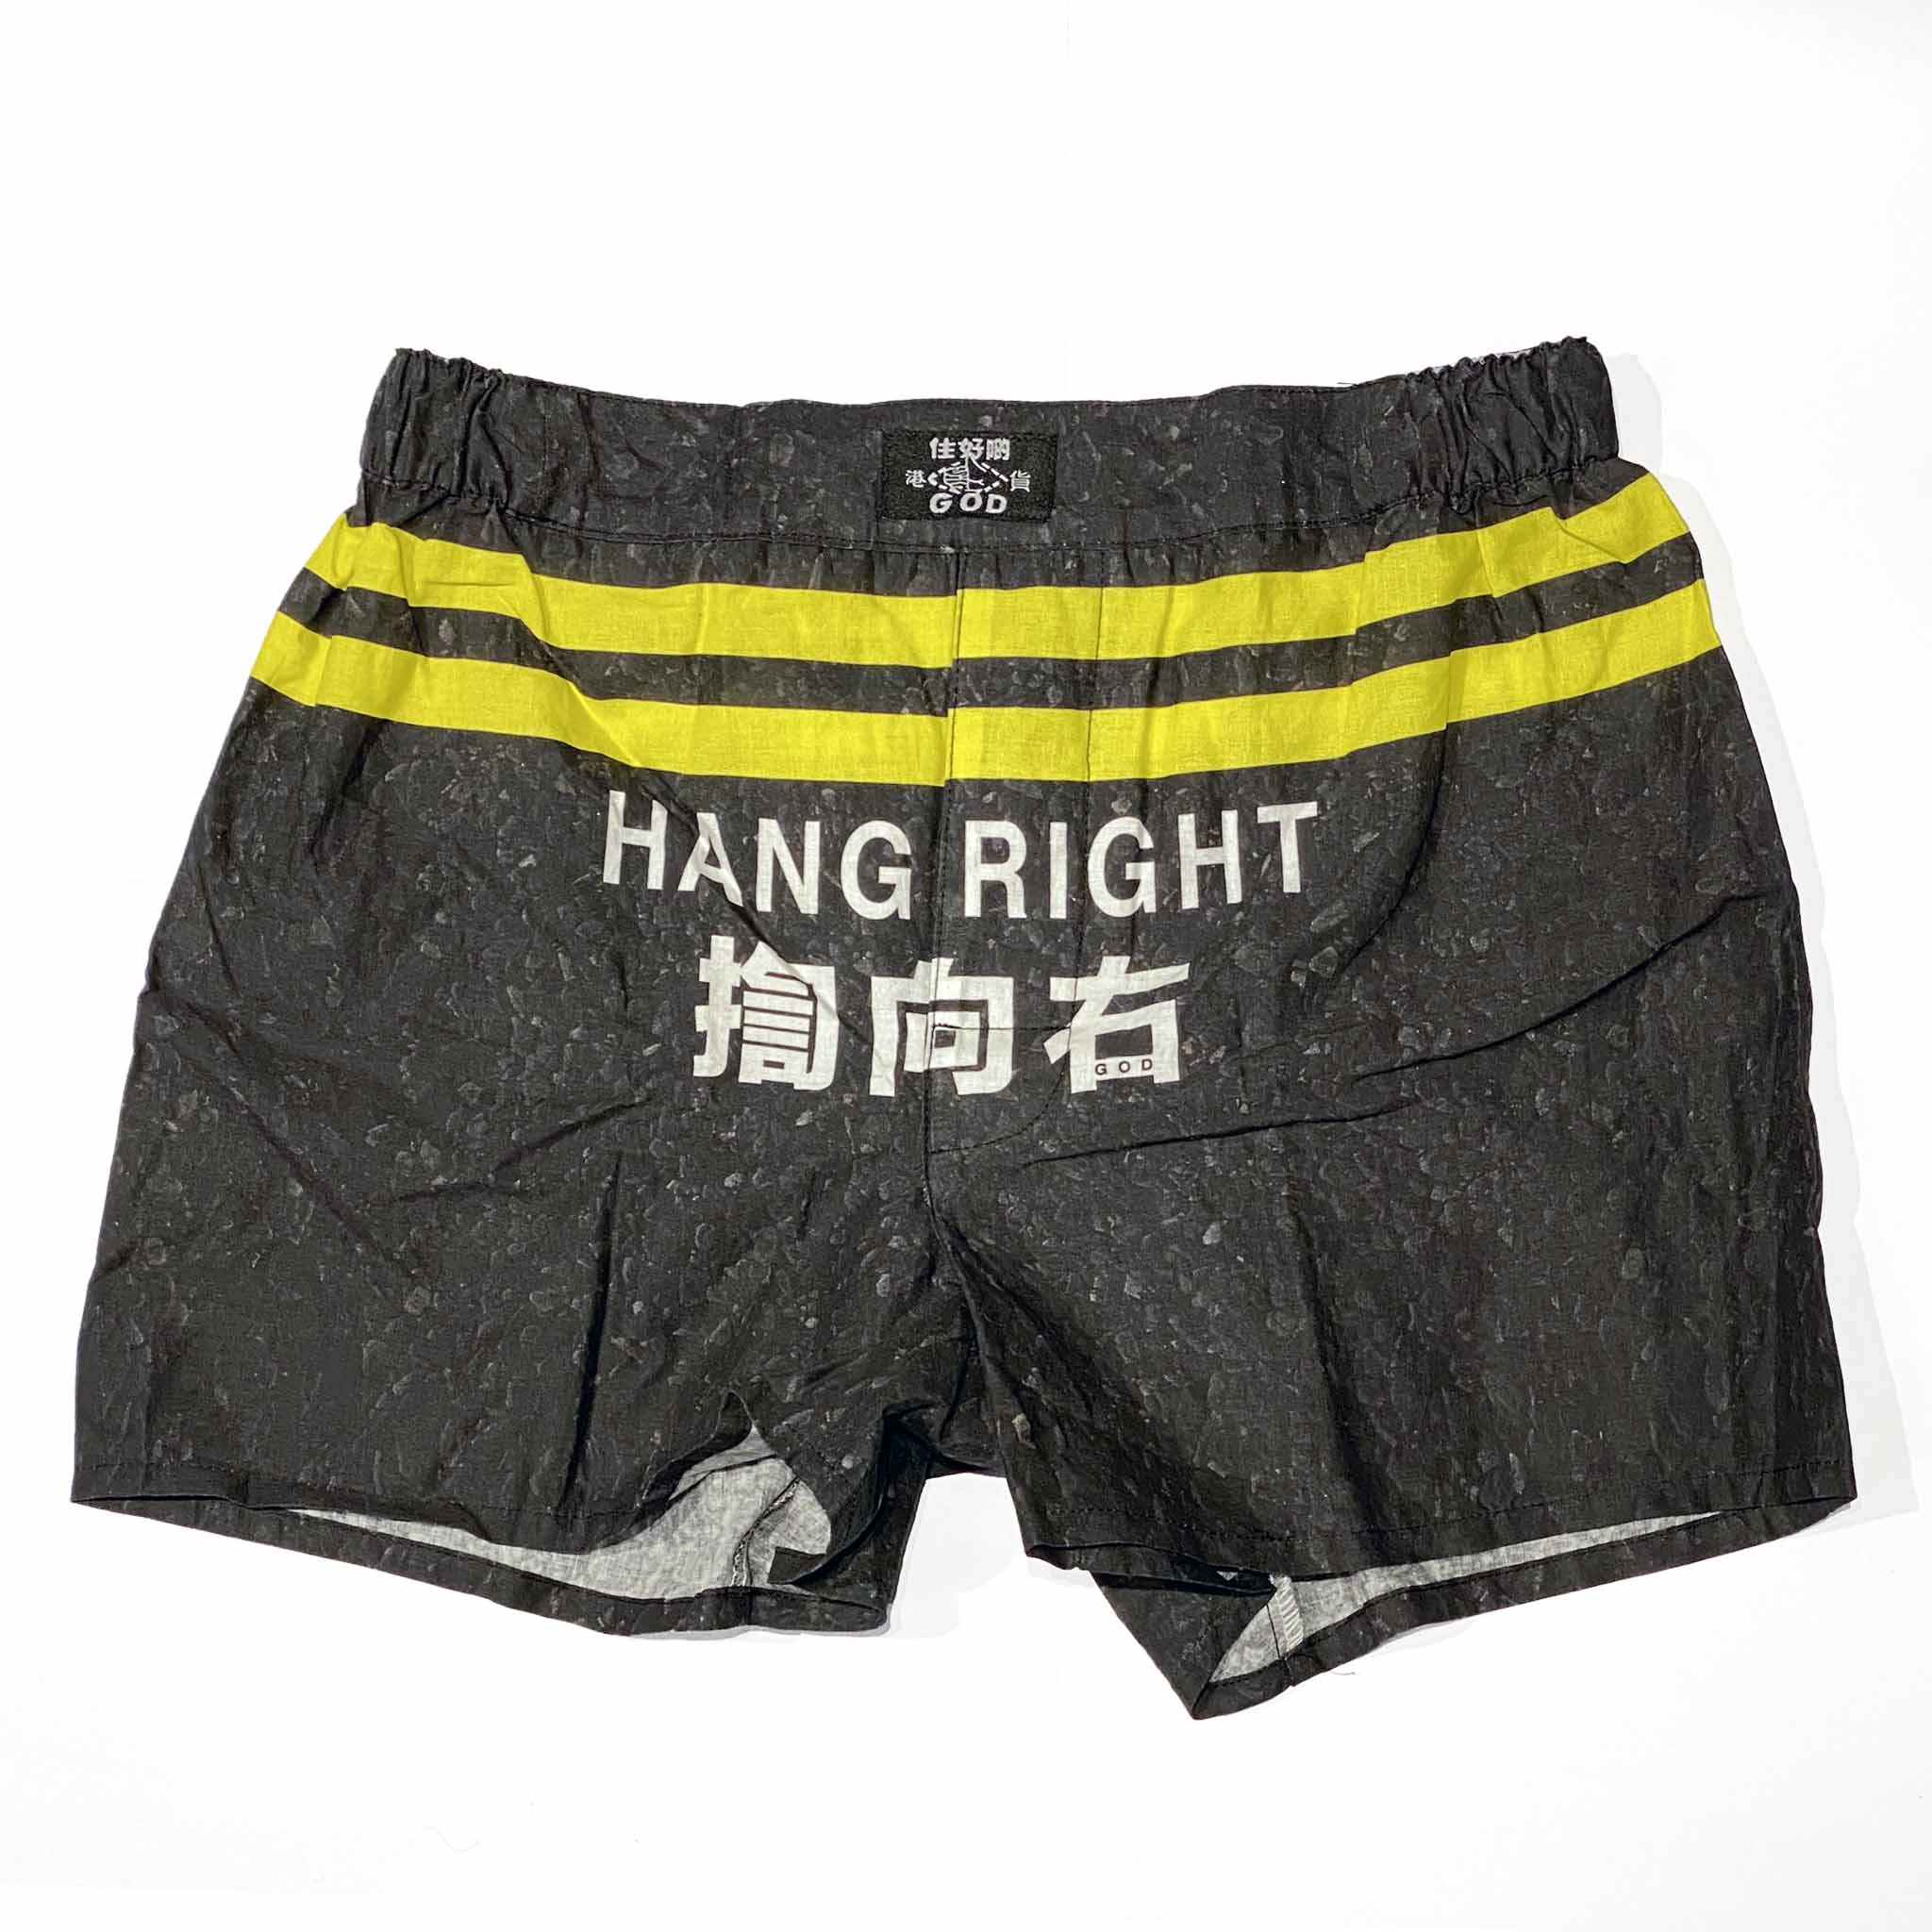 'Hang Right' Men's Boxer Shorts